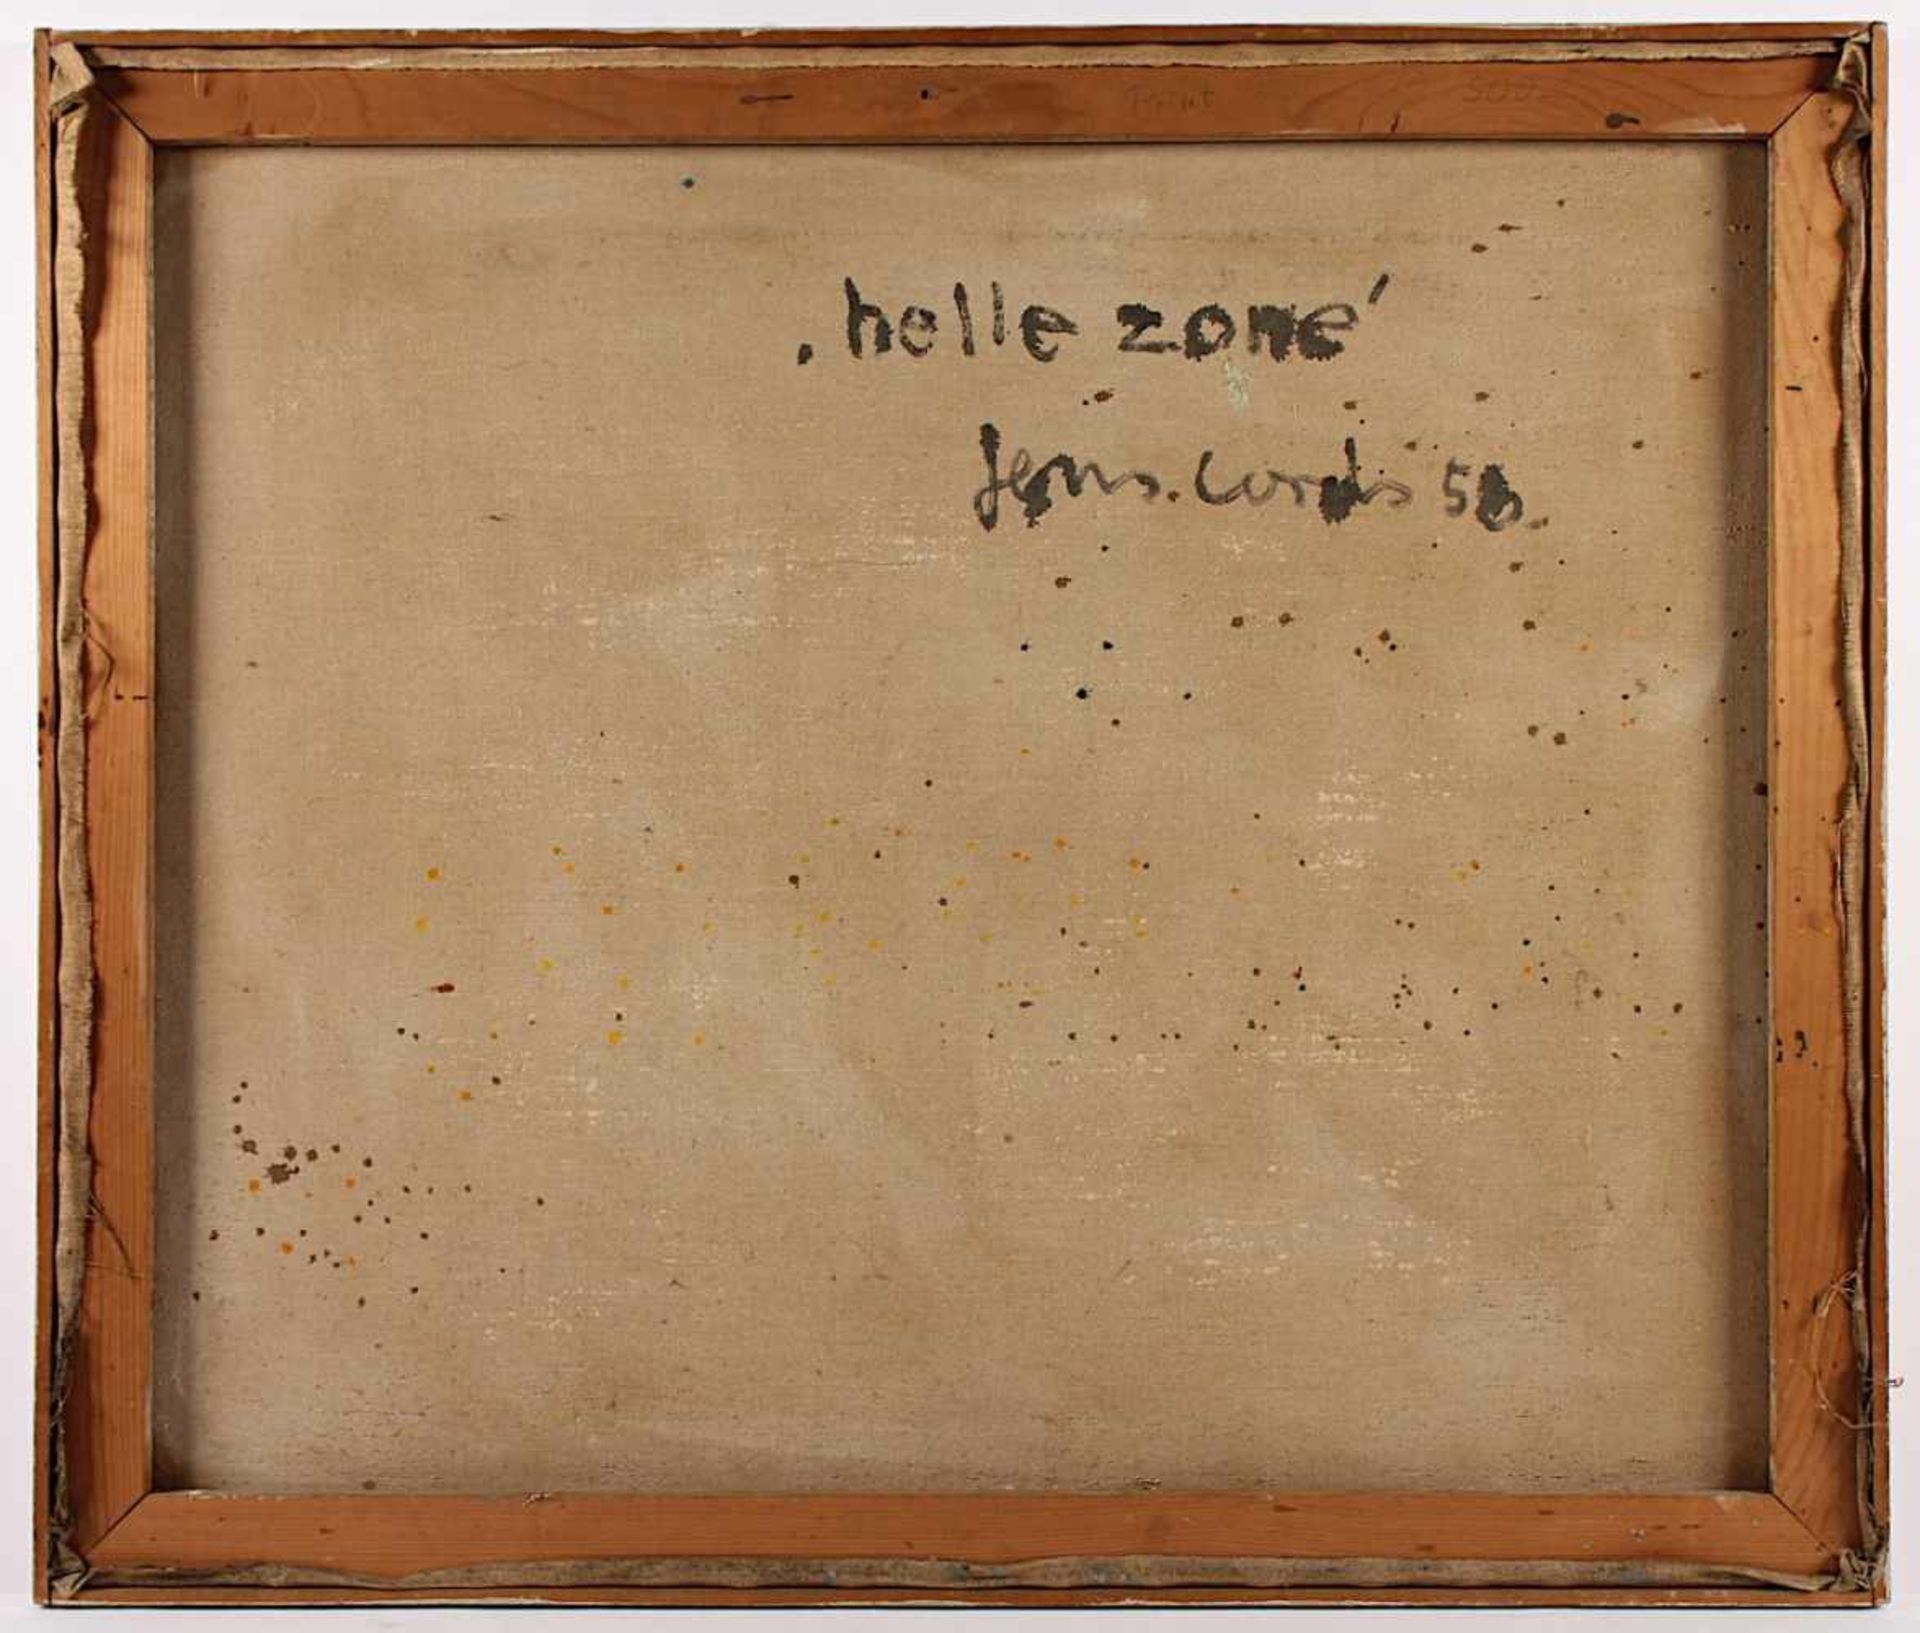 CORDS, Jens, "Helle Zone", Öl/Lwd., 81 x 95, unten rechts signiert und datiert '58, verso signiert - Bild 2 aus 2